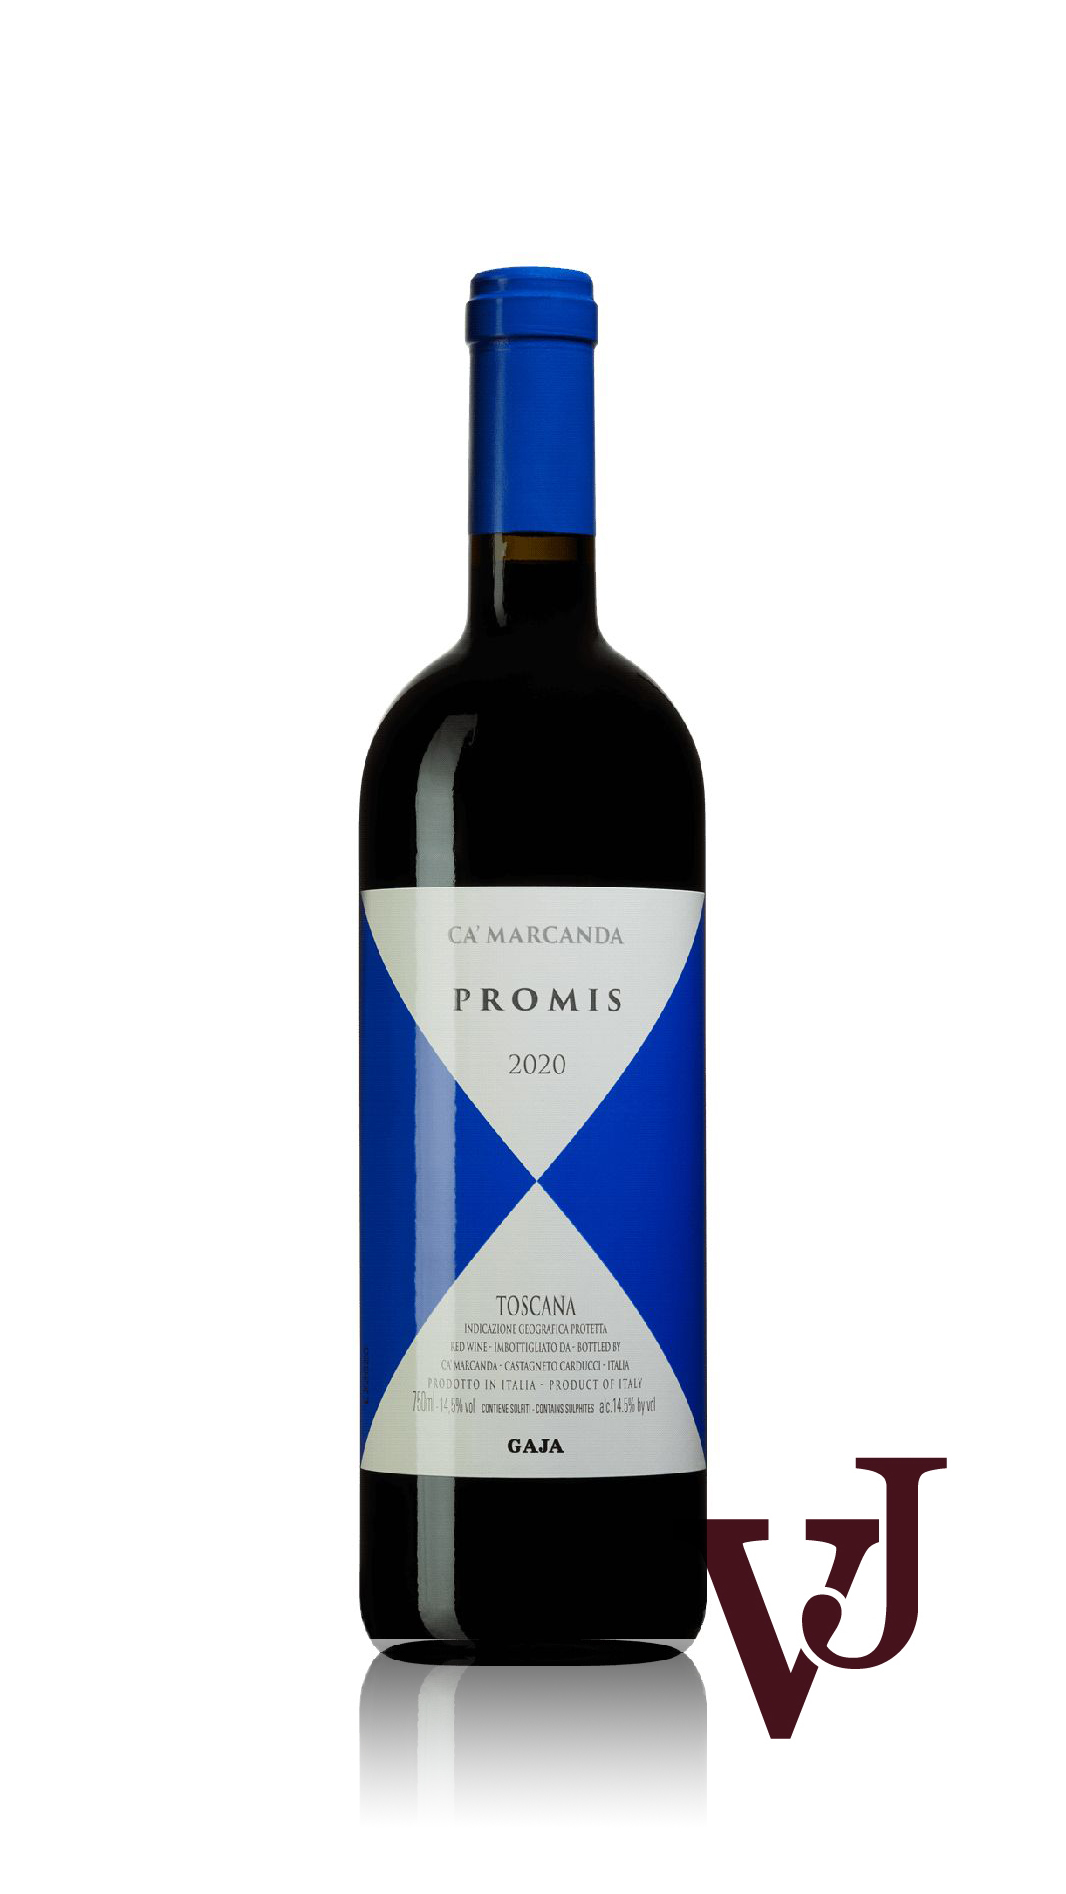 Rött Vin - Promis Ca'Marcanda 2020 artikel nummer 9023101 från producenten Gaja Ca'Marcanda från området Italien